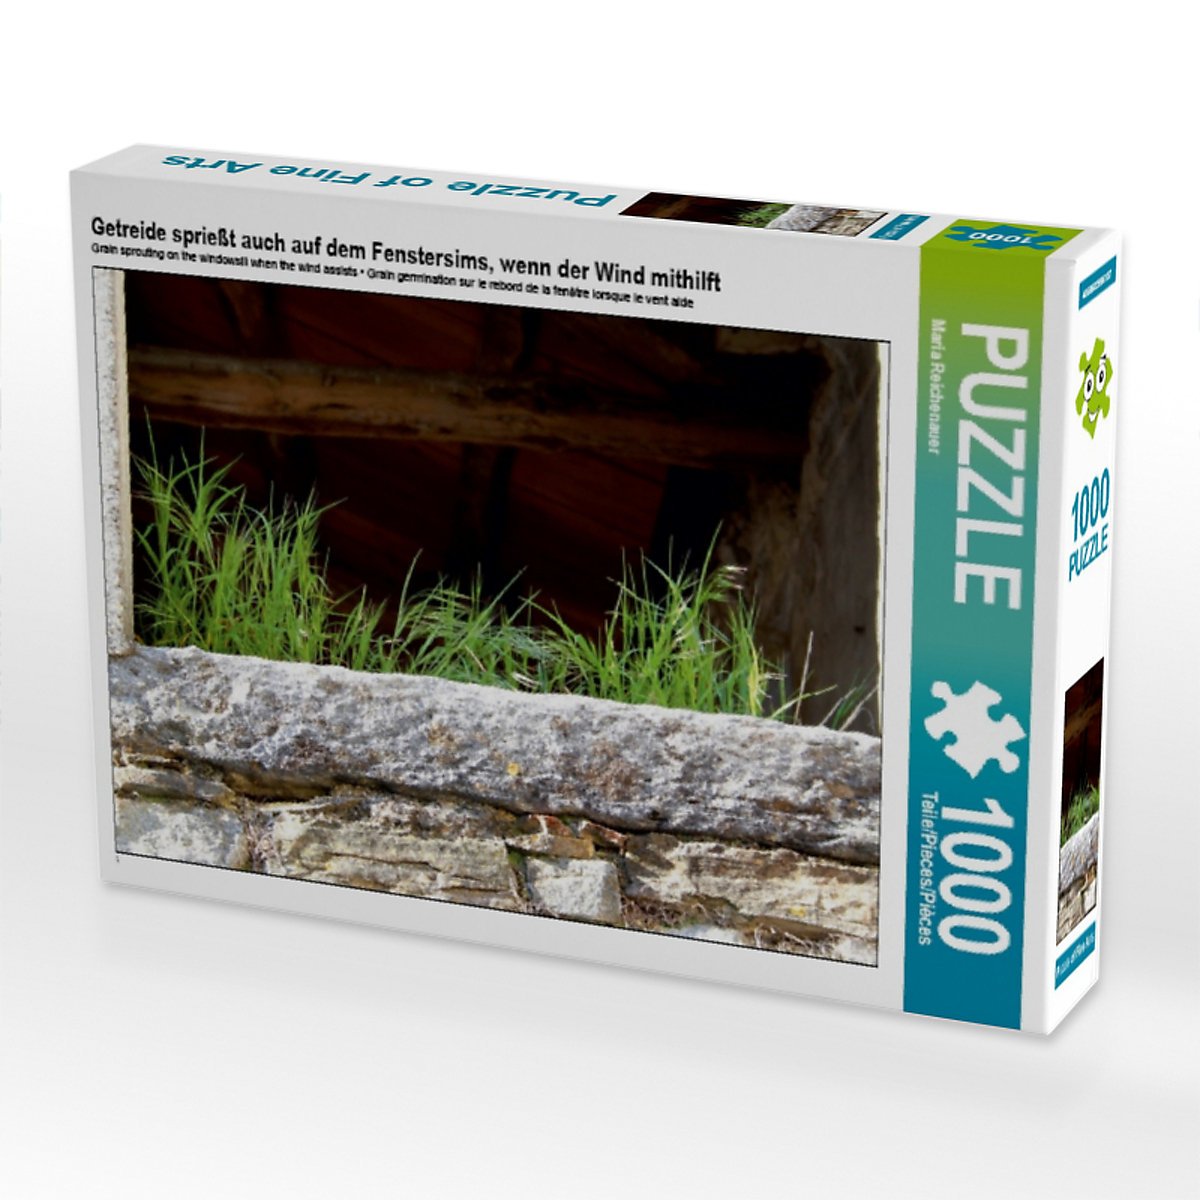 CALVENDO® Puzzle CALVENDO Puzzle Getreide sprießt auch auf dem Fenstersims wenn der Wind mithilft 1000 Teile Foto-Puzzle für glückliche Stunden